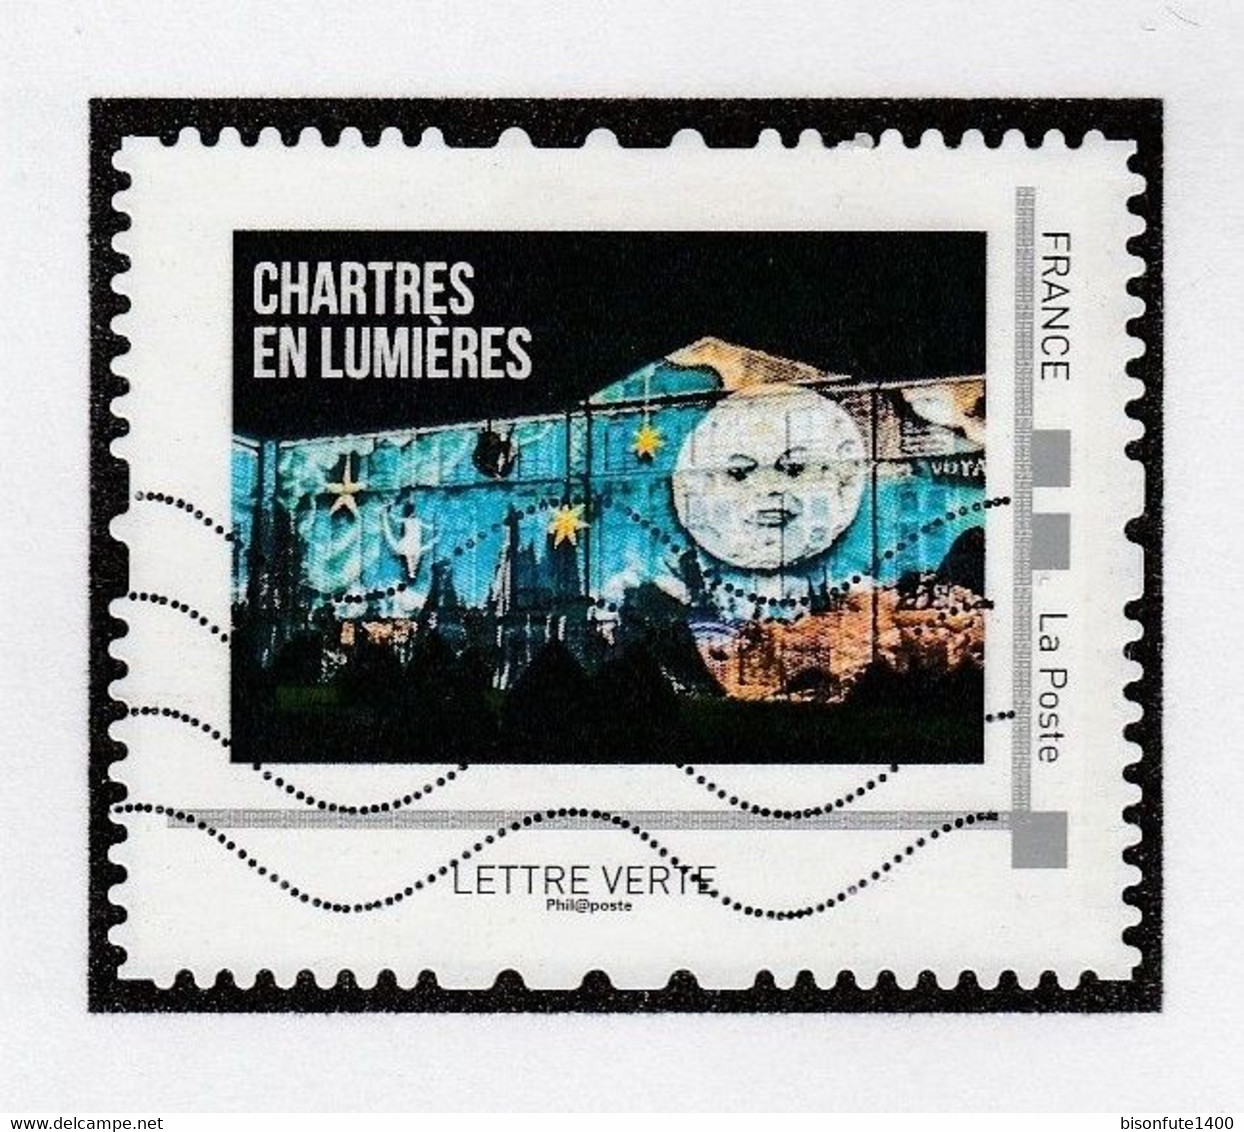 Série complète Collector 2016 : Chartres en Lumière, vendue avec sa feuille de présent. (*) ( Voir photos ).